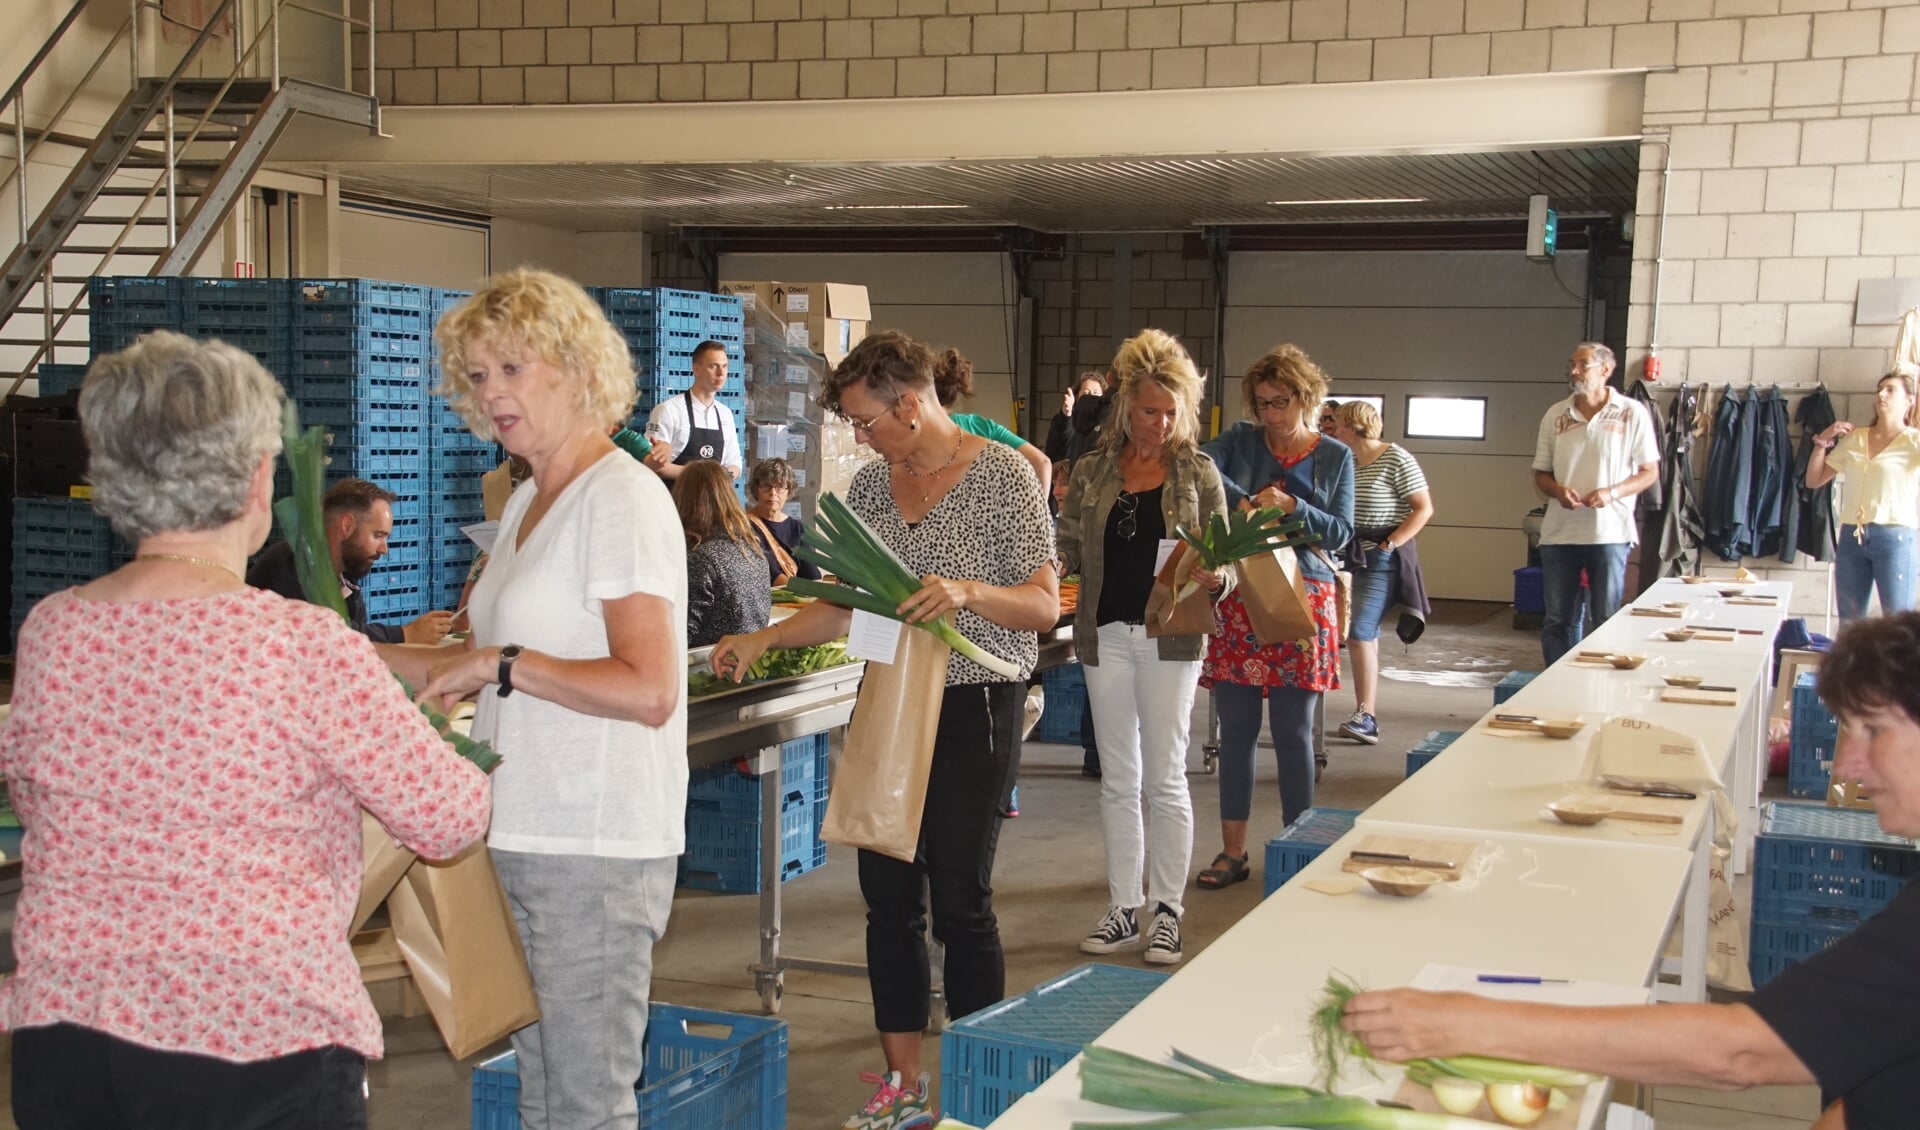 De deelnemers pakken de spullen die ze nodig hebben voor hun 'bloemschikopdracht' met prei. Foto: Frank Vinkenvleugel